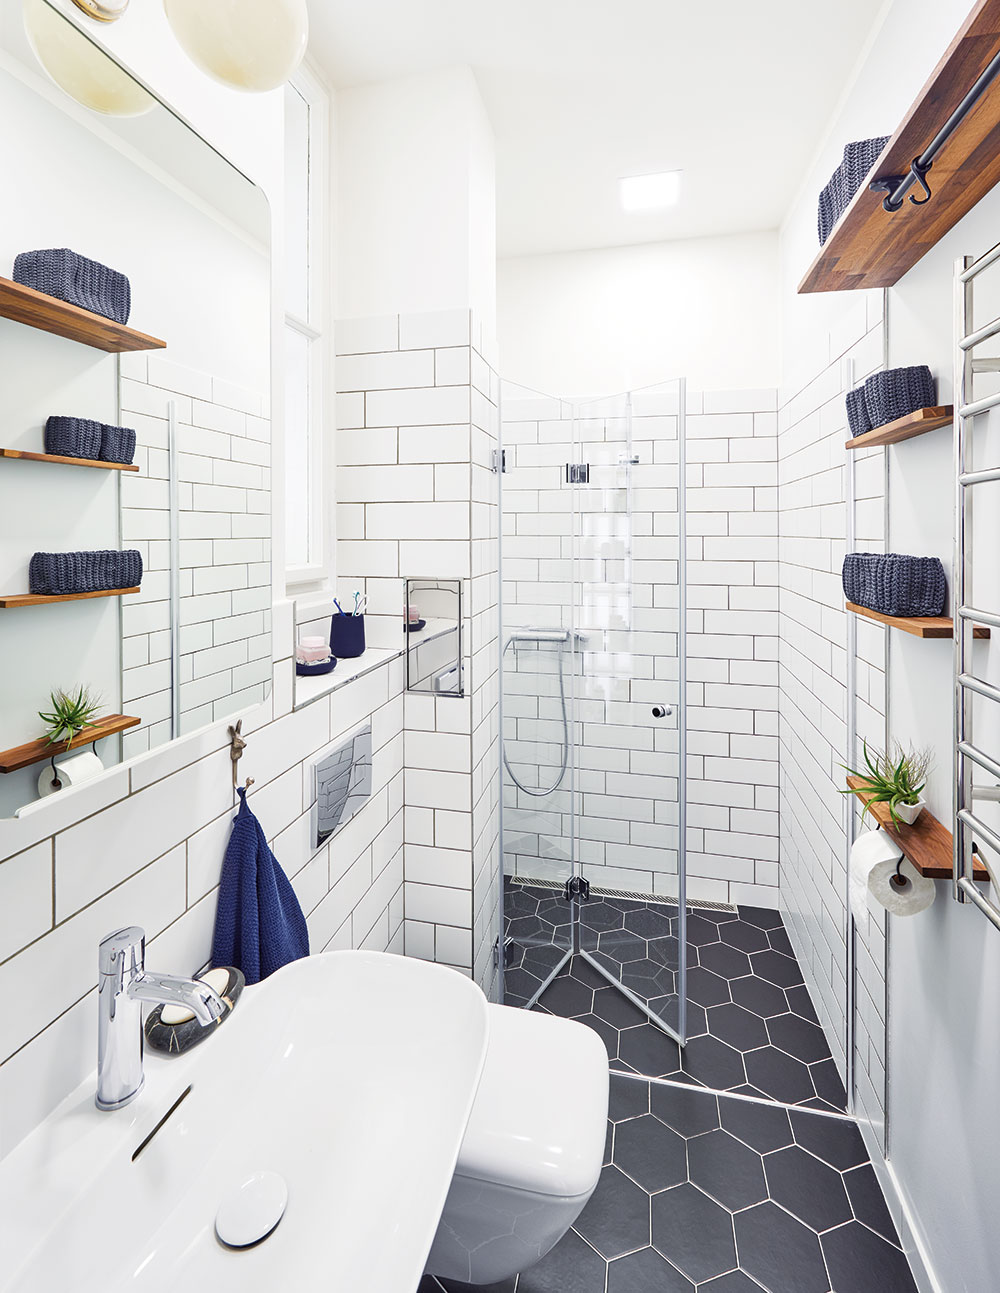 Elegantní a stylově čistá koupelna si vystačí s minimem místa, a přece je maximálně funkční a praktická. FOTO FRVR